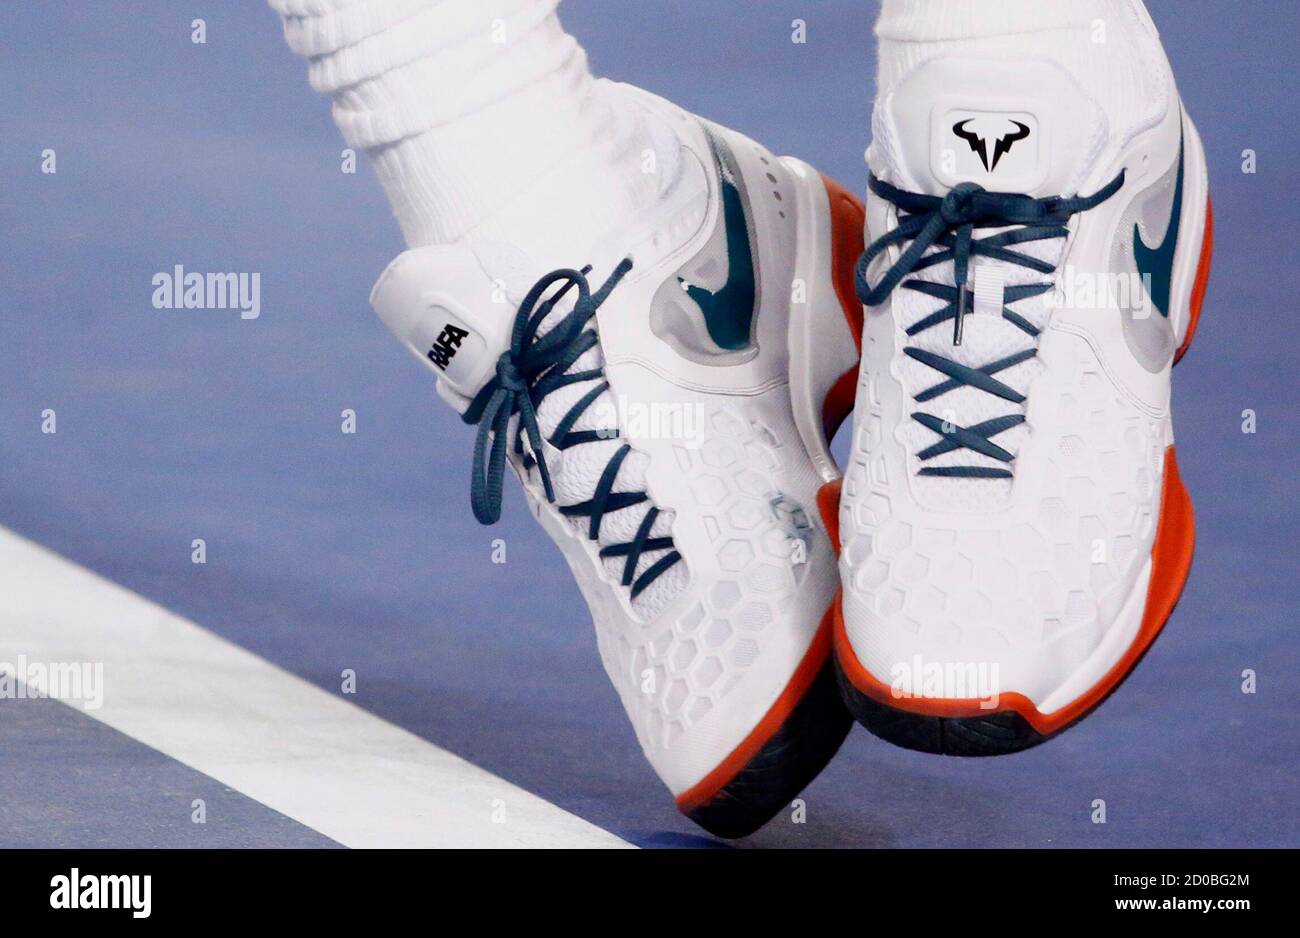 Le mot « Rafa » et le logo d'un taureau sont visibles sur Rafael Nadal, de  la paire de chaussures Nike d'Espagne, alors qu'il est au service de  Thanasi Kokkinakis, d'Australie, lors